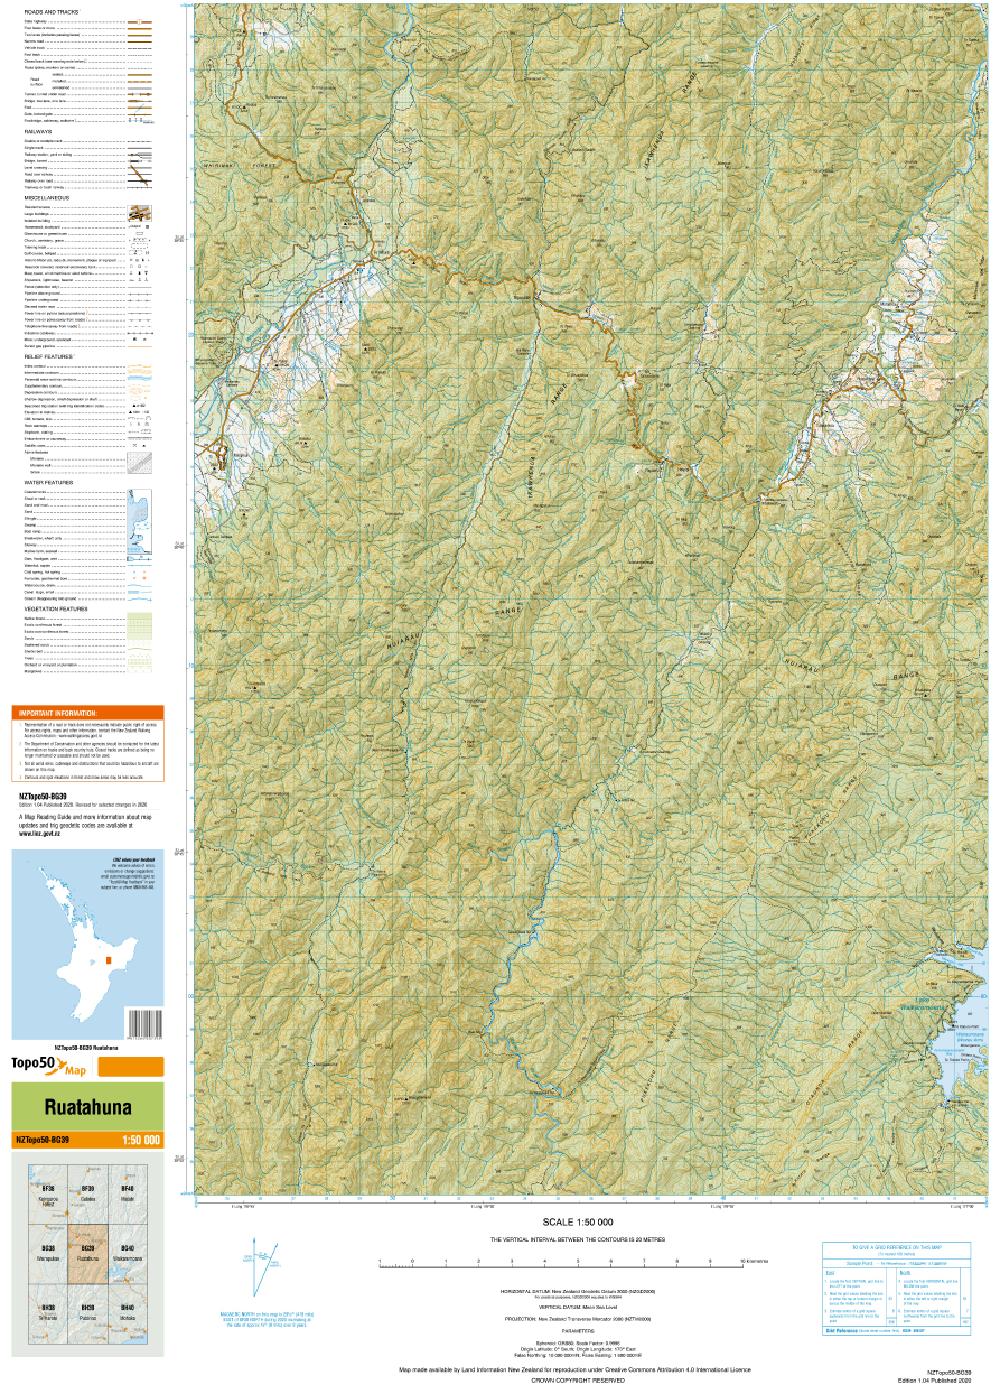 Topo map of Ruatahuna